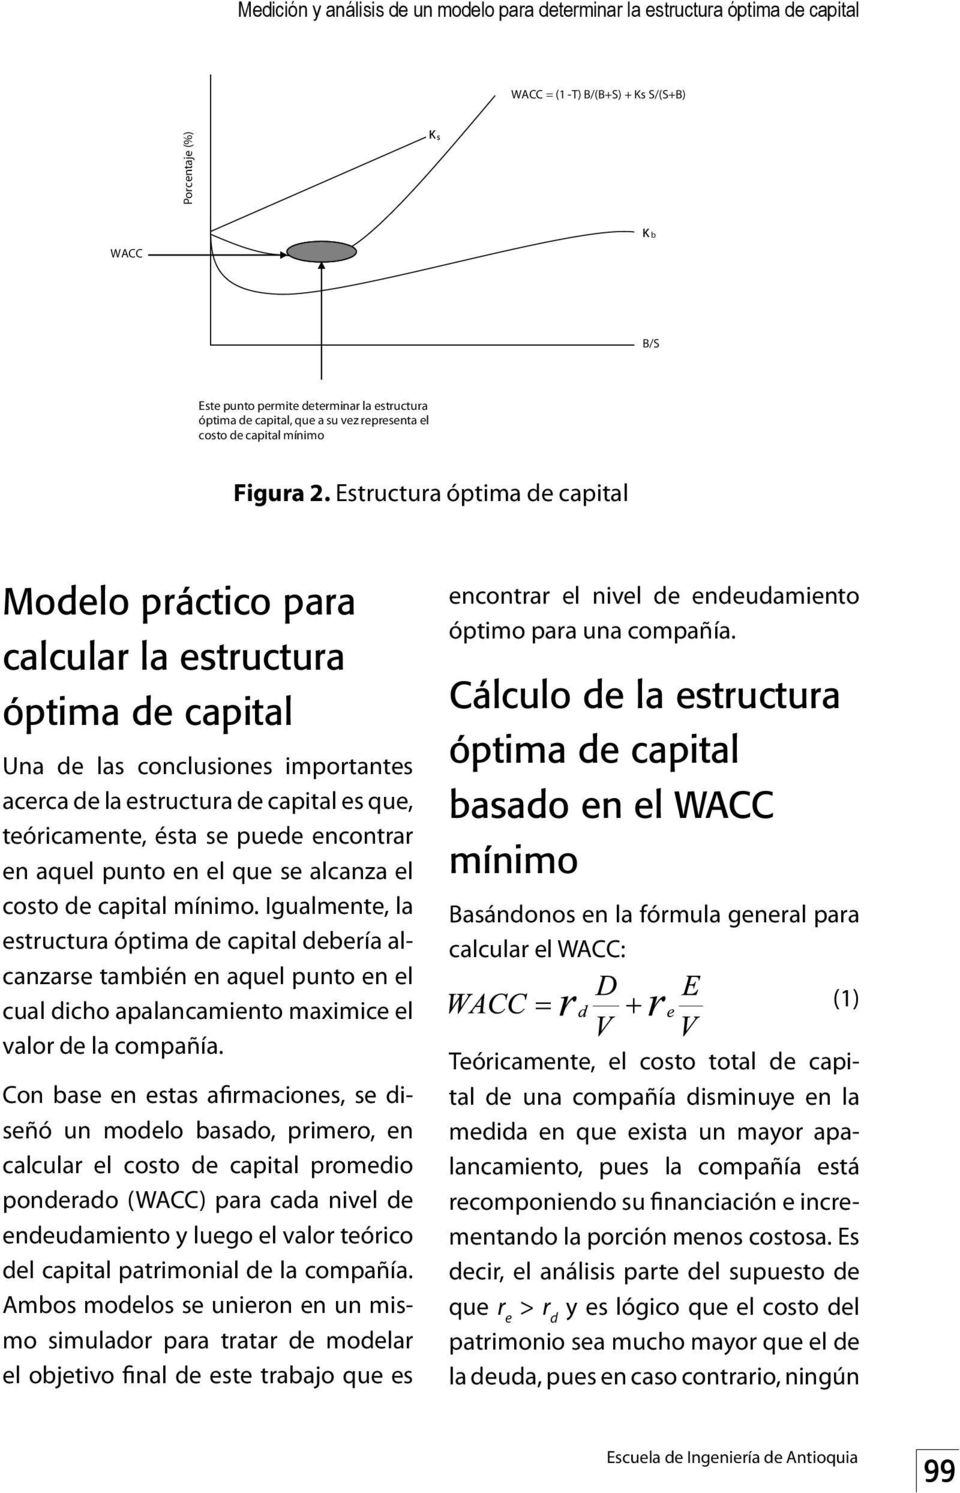 Estructura óptima de capital Modelo práctico para calcular la estructura óptima de capital Una de las conclusiones importantes acerca de la estructura de capital es que, teóricamente, ésta se puede